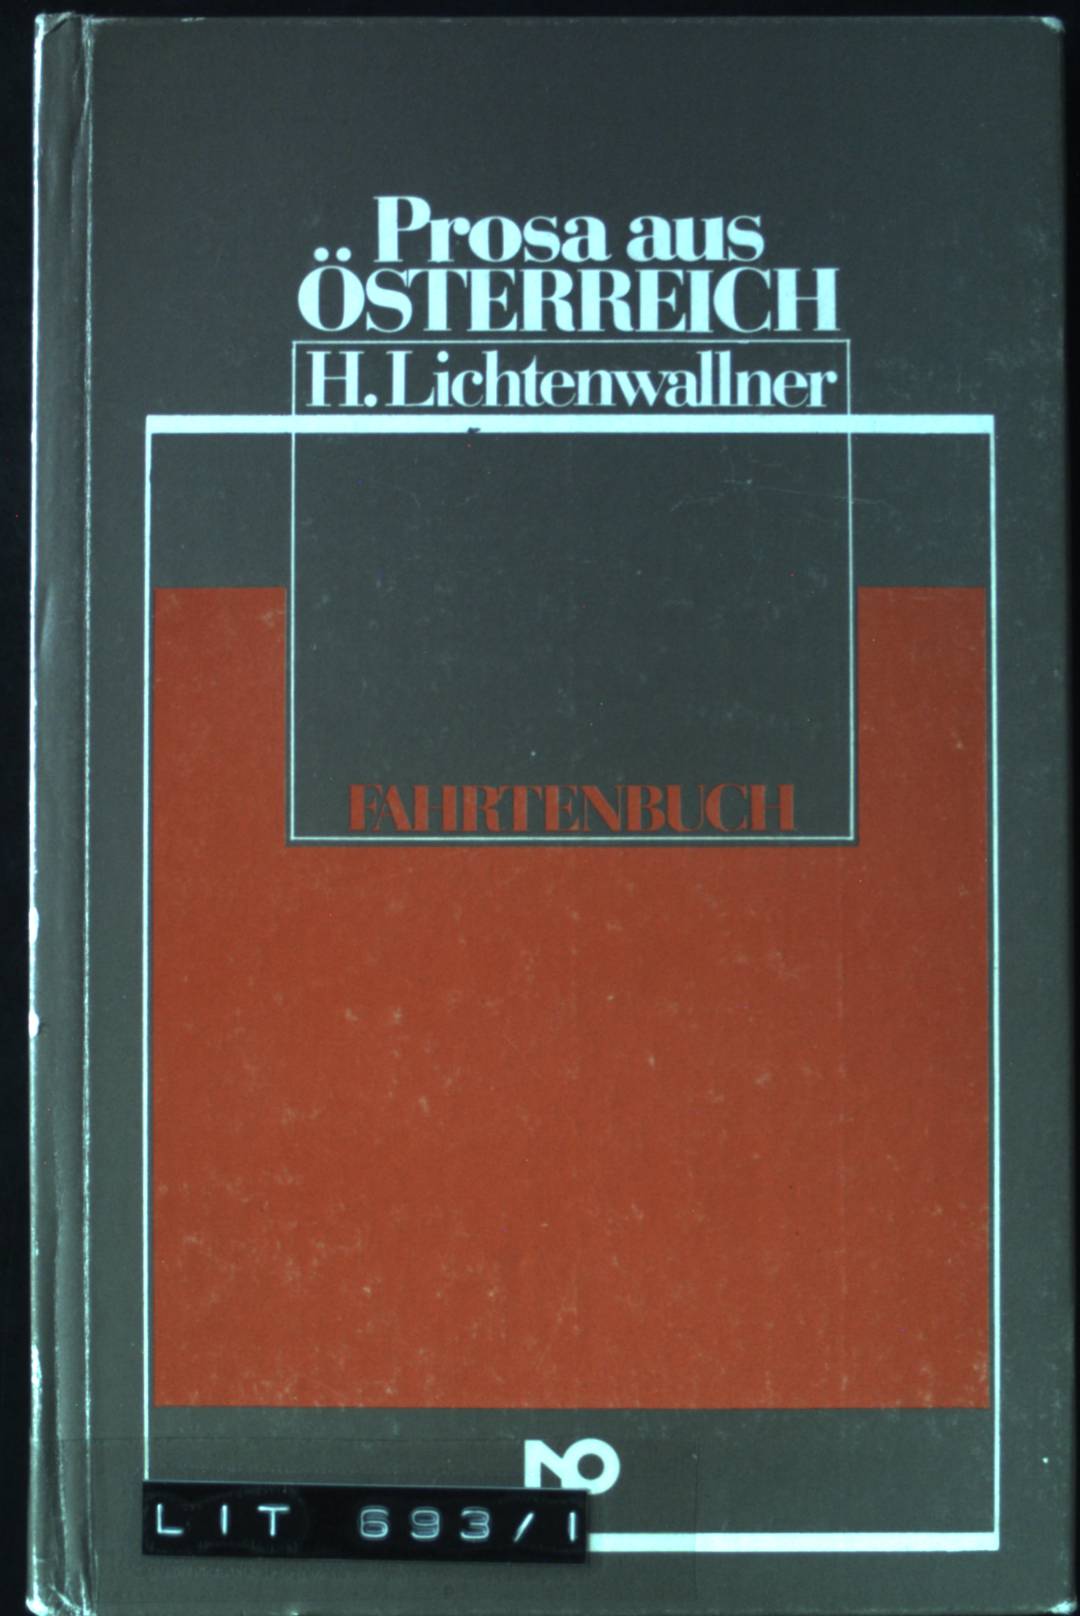 Fahrtenbuch. Prosa aus Österreich 1. Aufl. - Lichtenwallner, Hildegard